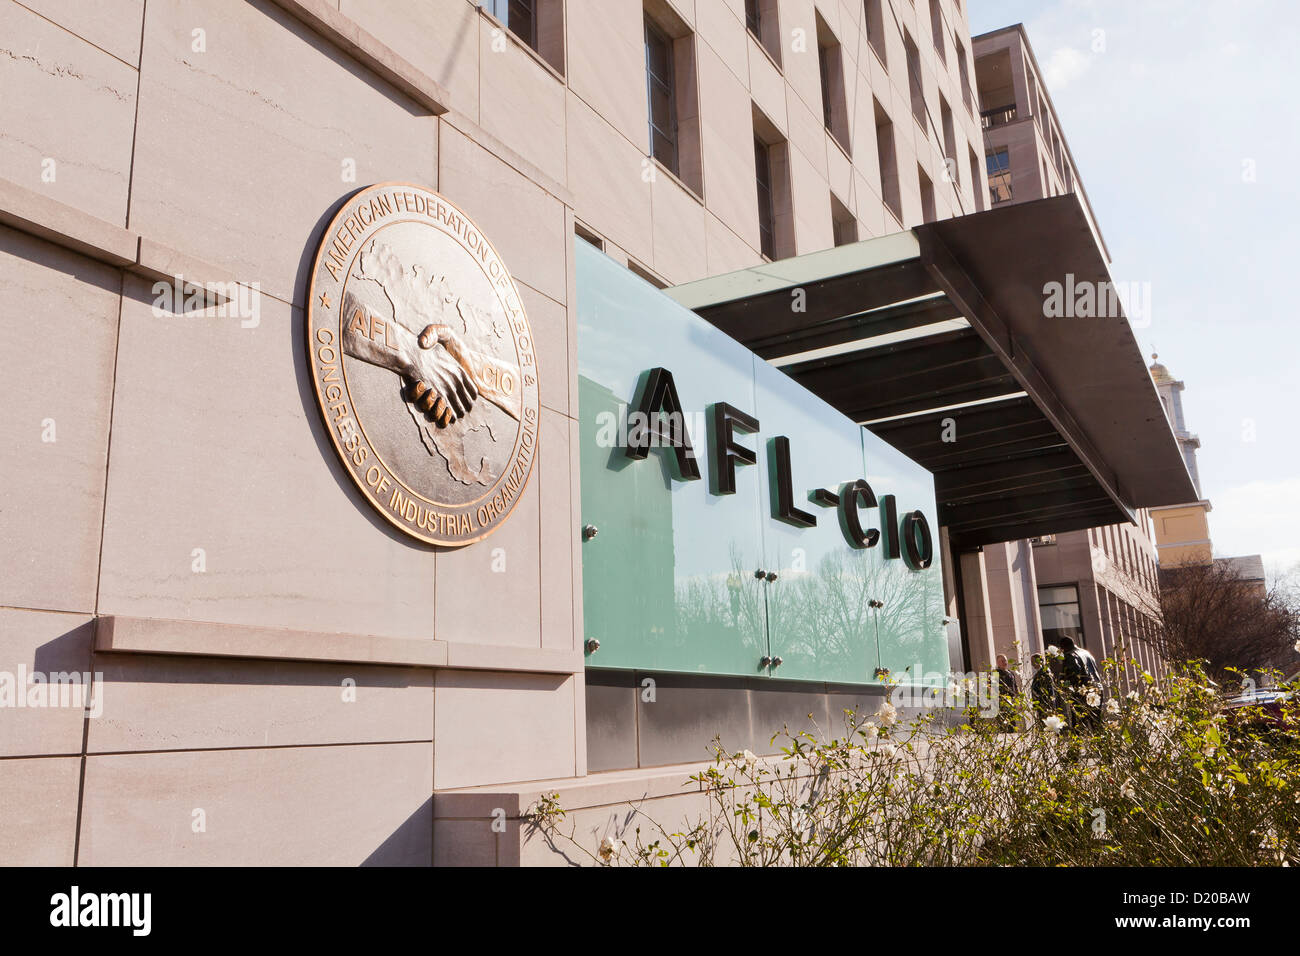 AFL CIO edificio sede centrale - Washington DC, Stati Uniti d'America Foto Stock